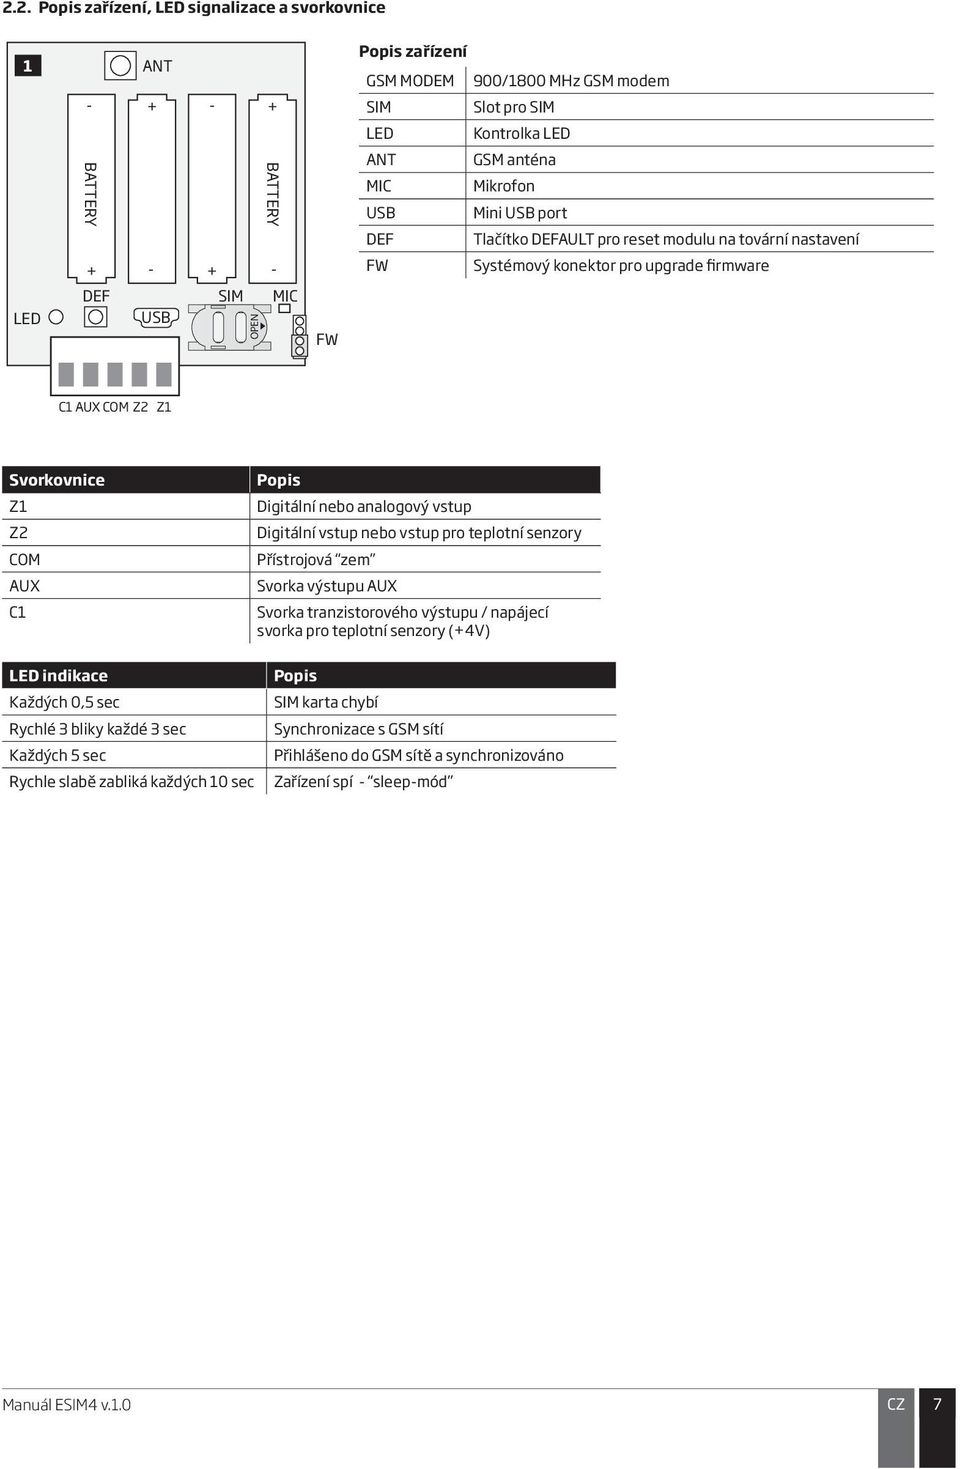 AUX C1 Popis Digitální nebo analogový vstup Digitální vstup nebo vstup pro teplotní senzory Přístrojová zem Svorka výstupu AUX Svorka tranzistorového výstupu / napájecí svorka pro teplotní senzory